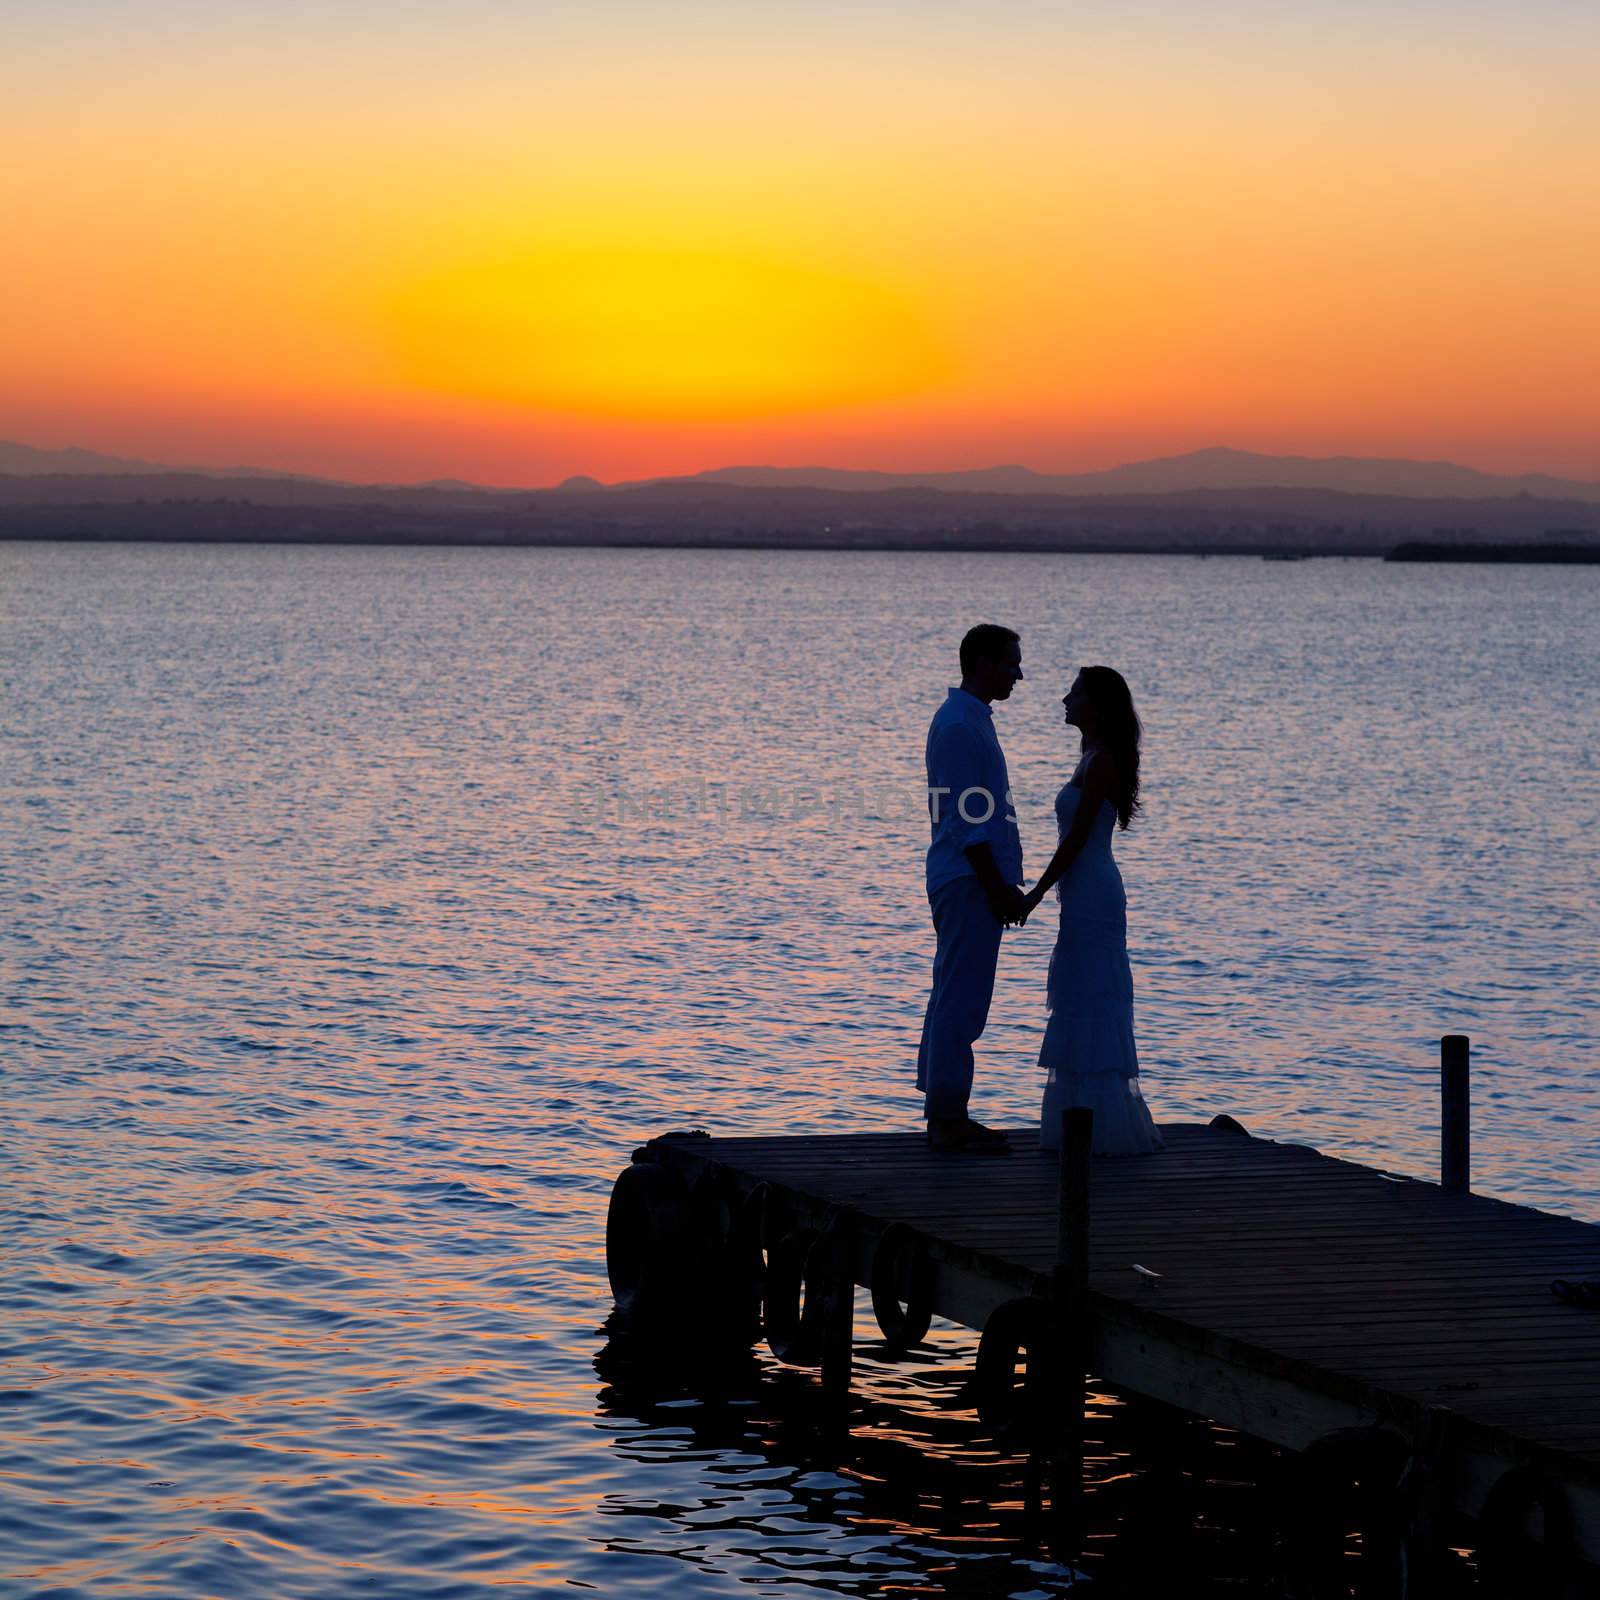 couple in love back light silhouette at lake sunset full length